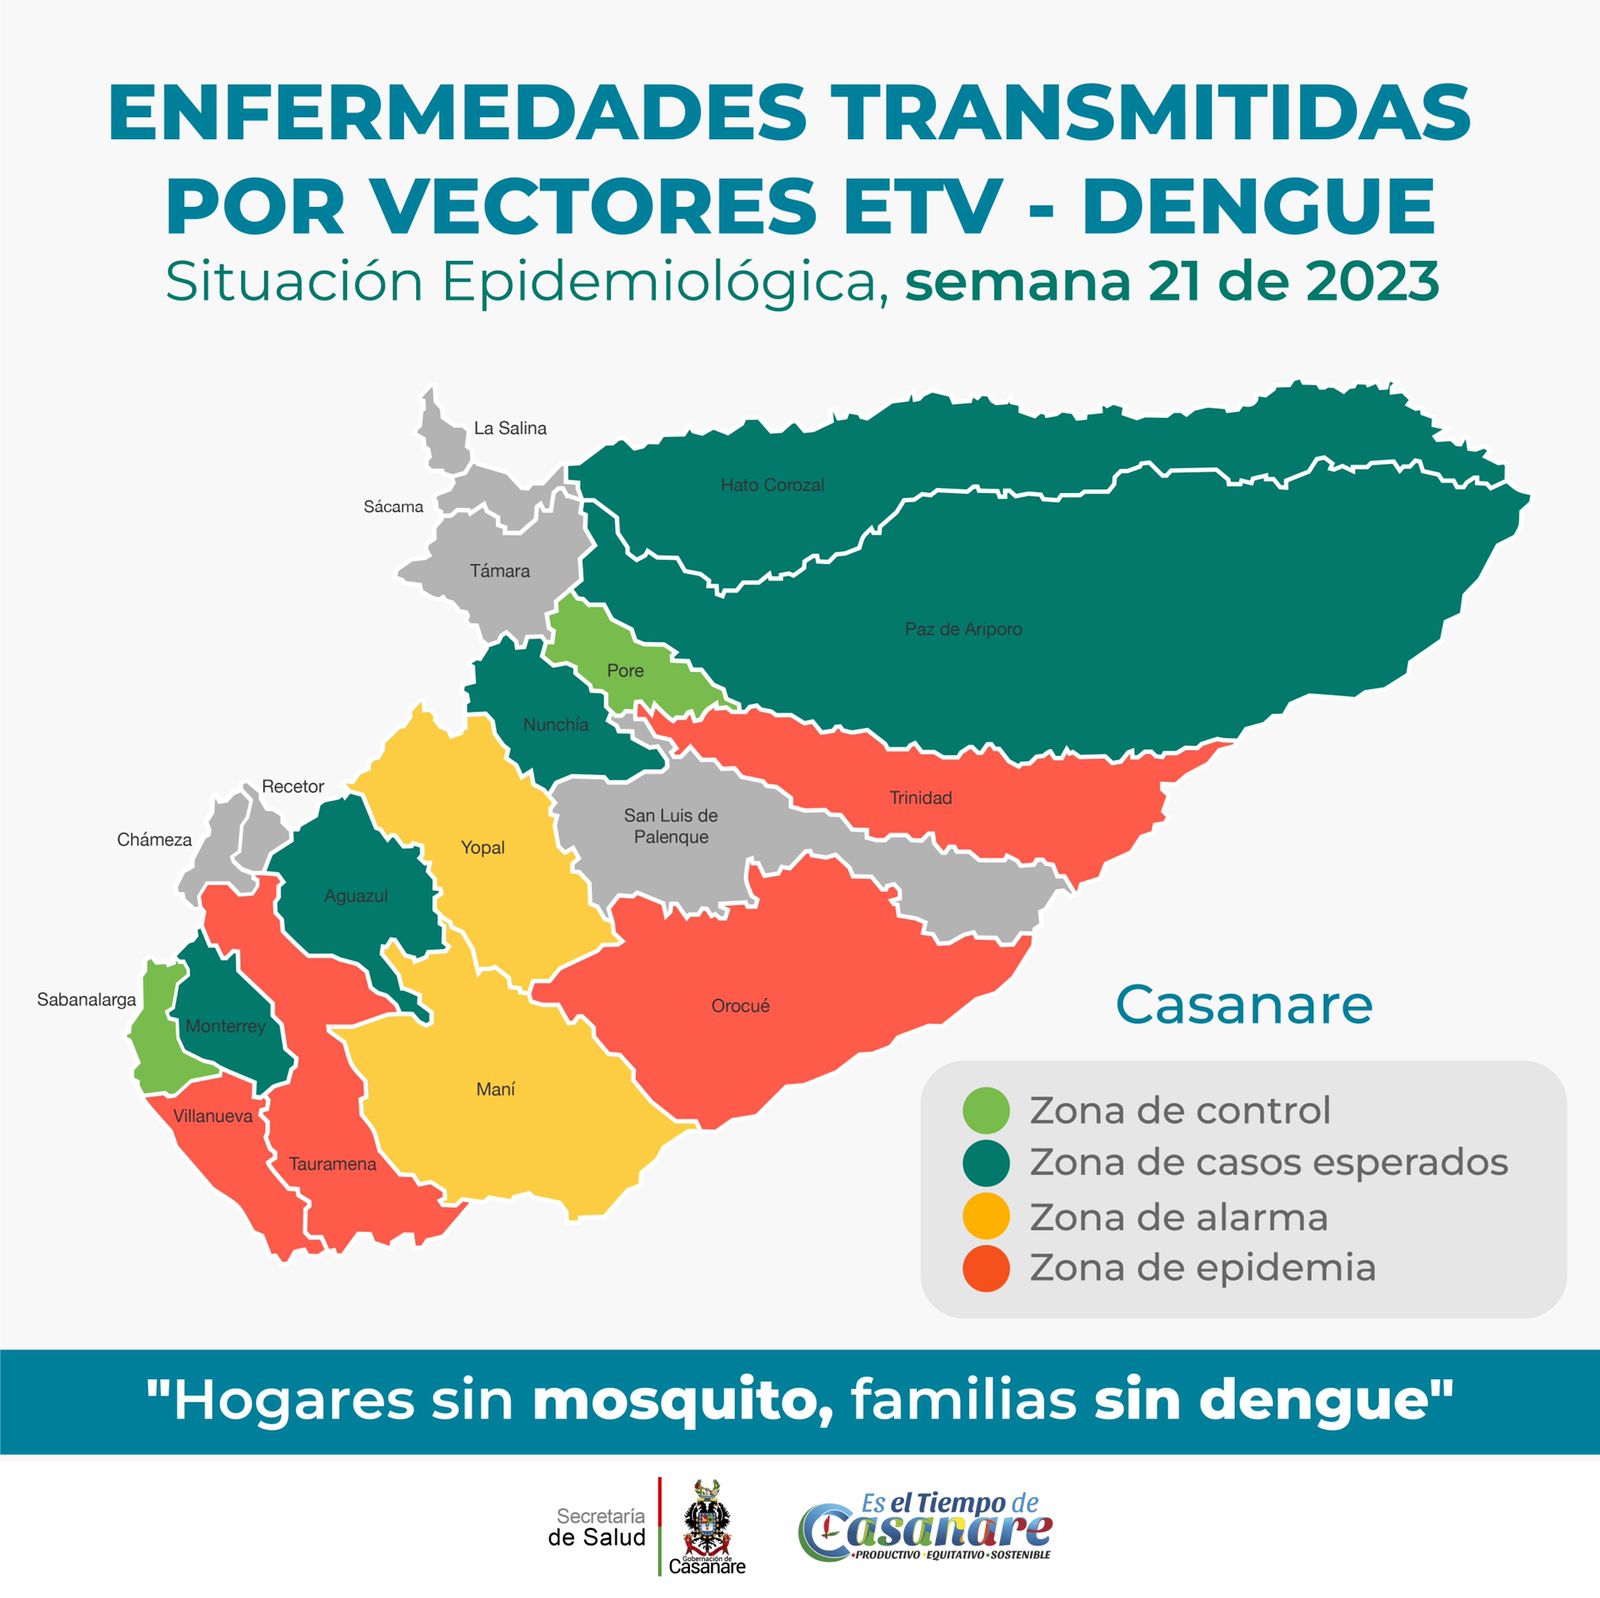 2 municipios de Casanare en alarma por dengue